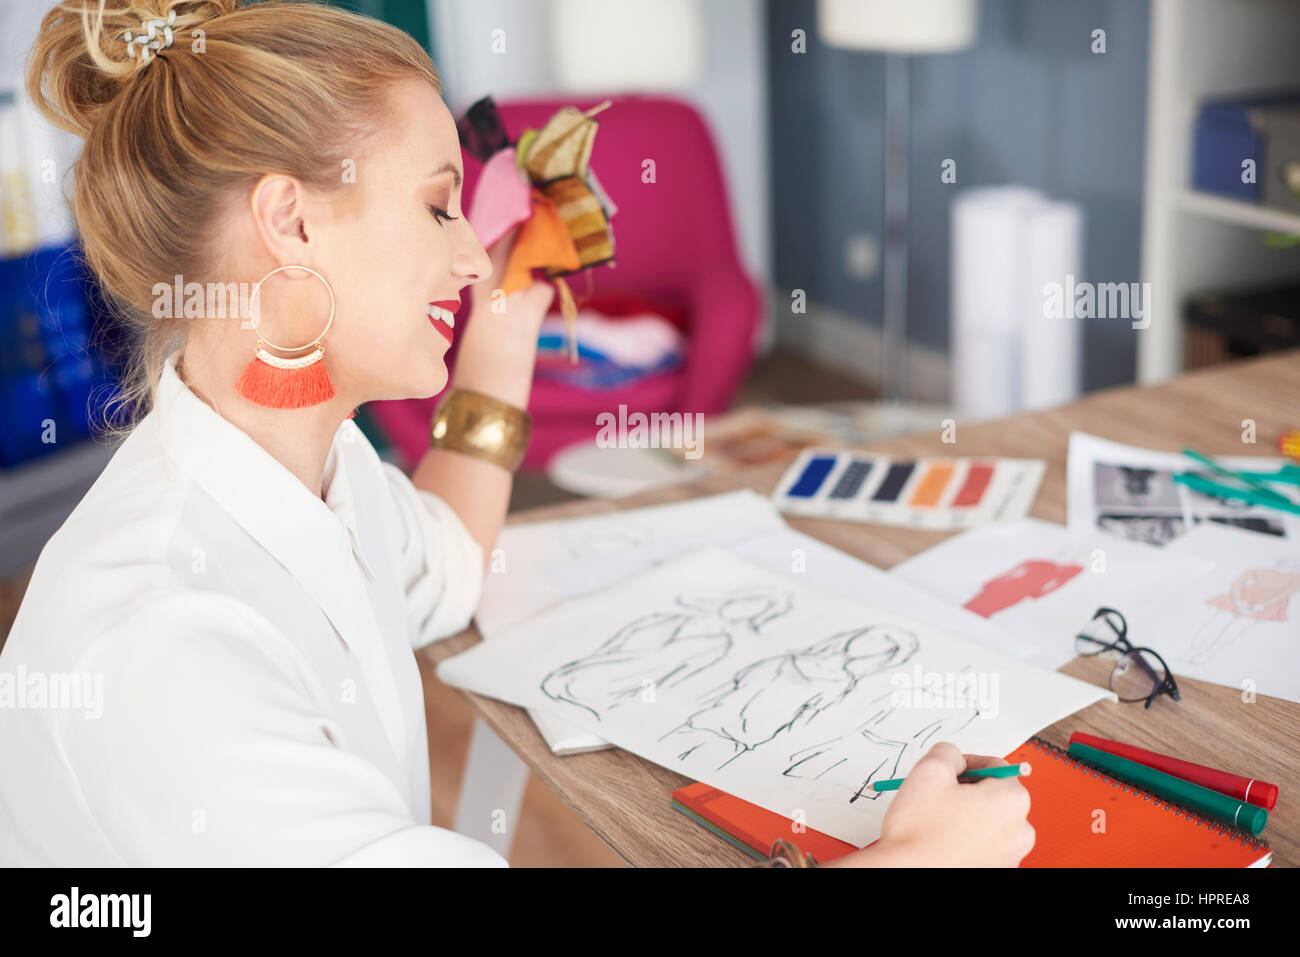 Frau skizzieren einige Entwürfe der neuen Kollektion Stockfoto